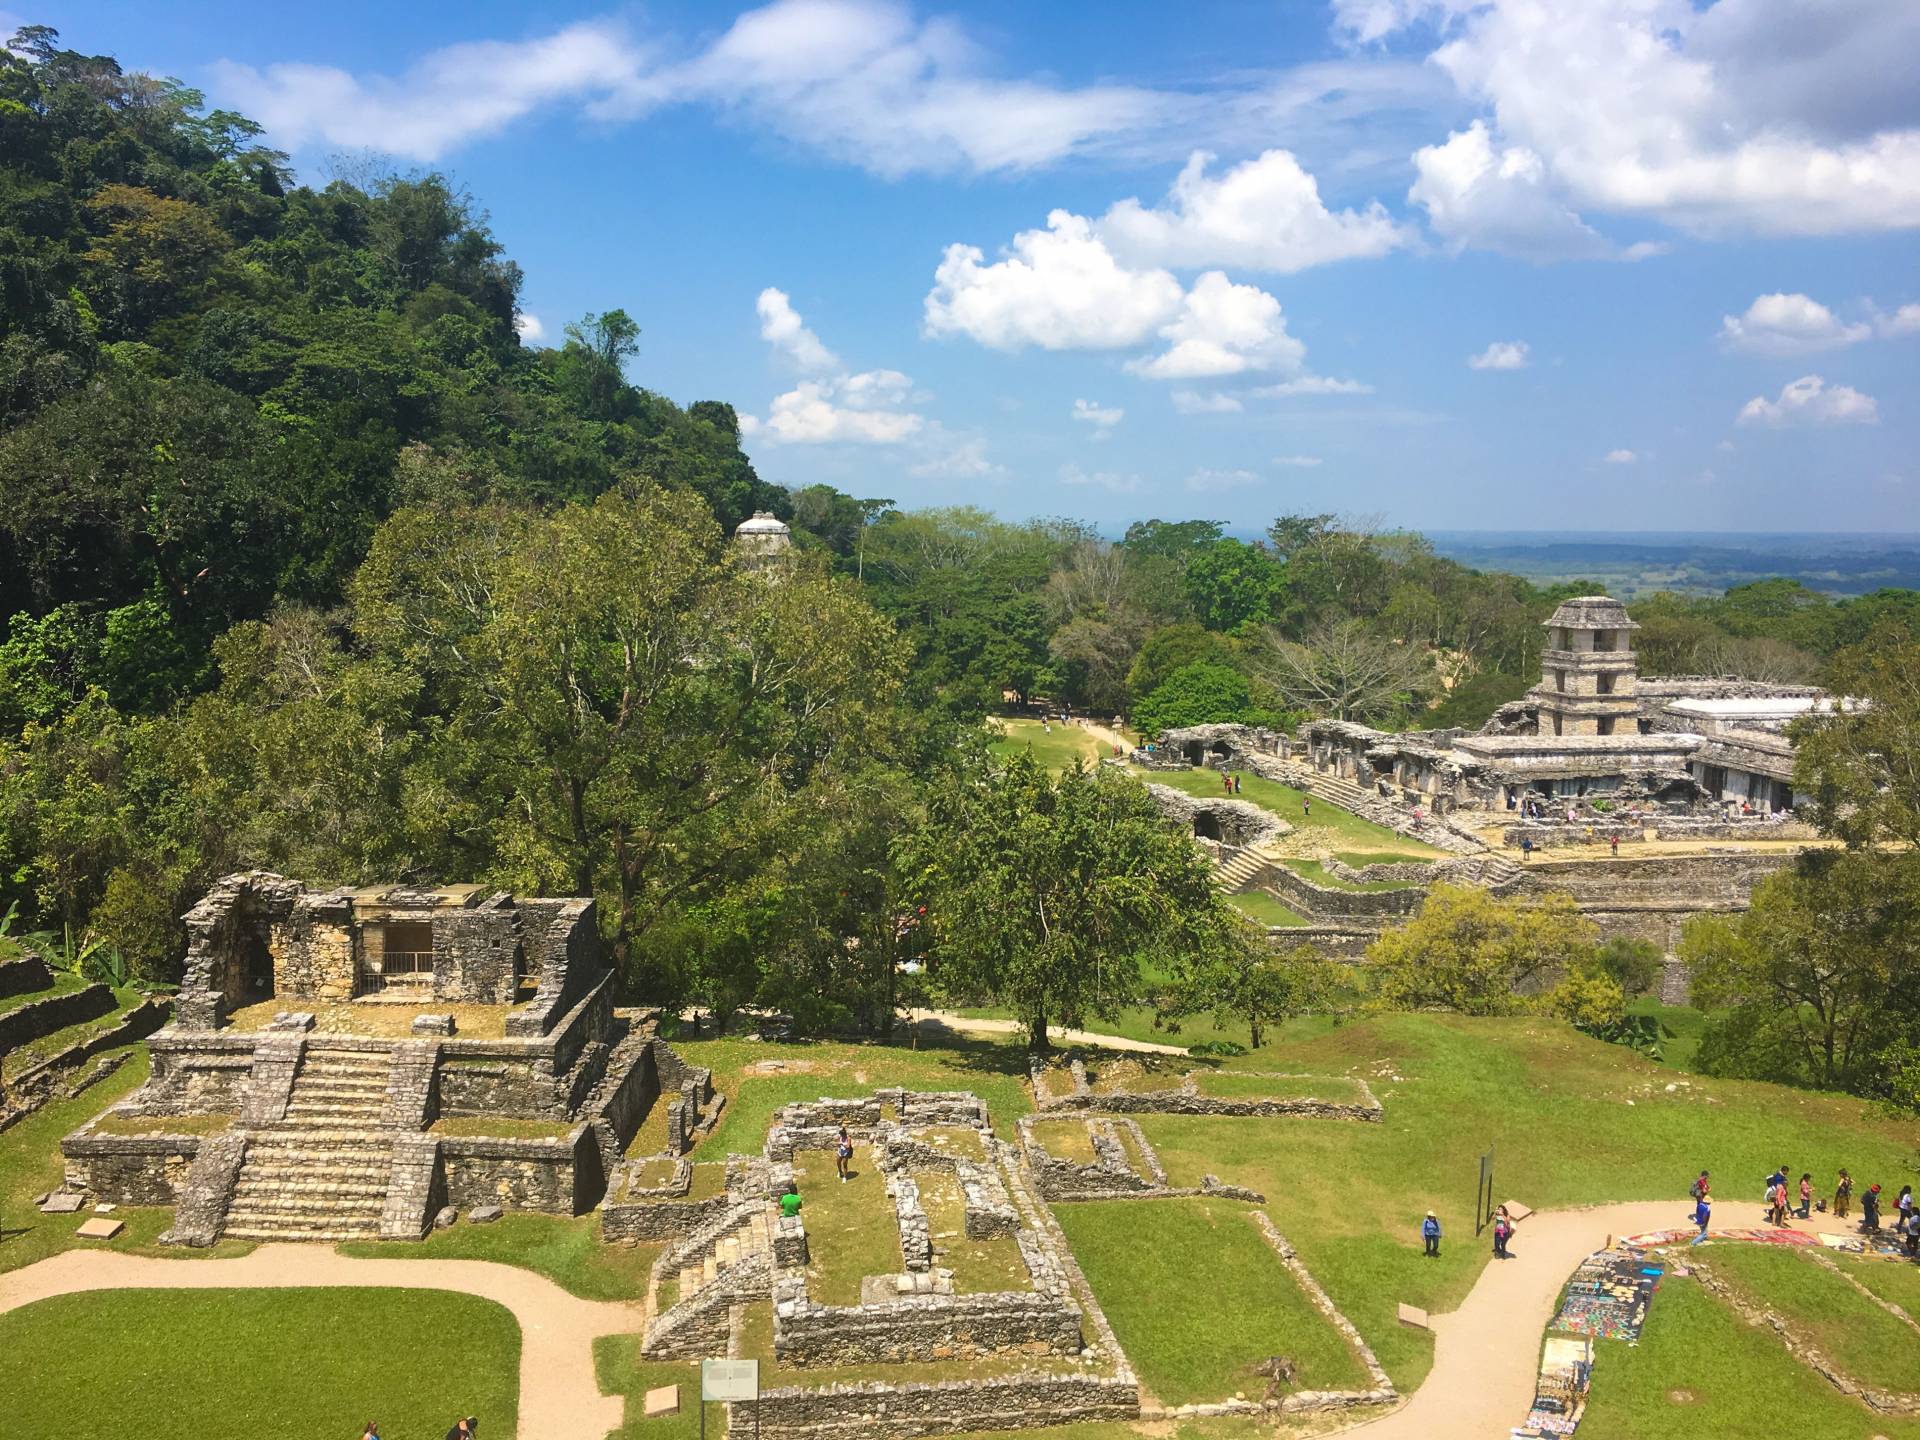 Vista of Palenque, Chiapas, Mexico